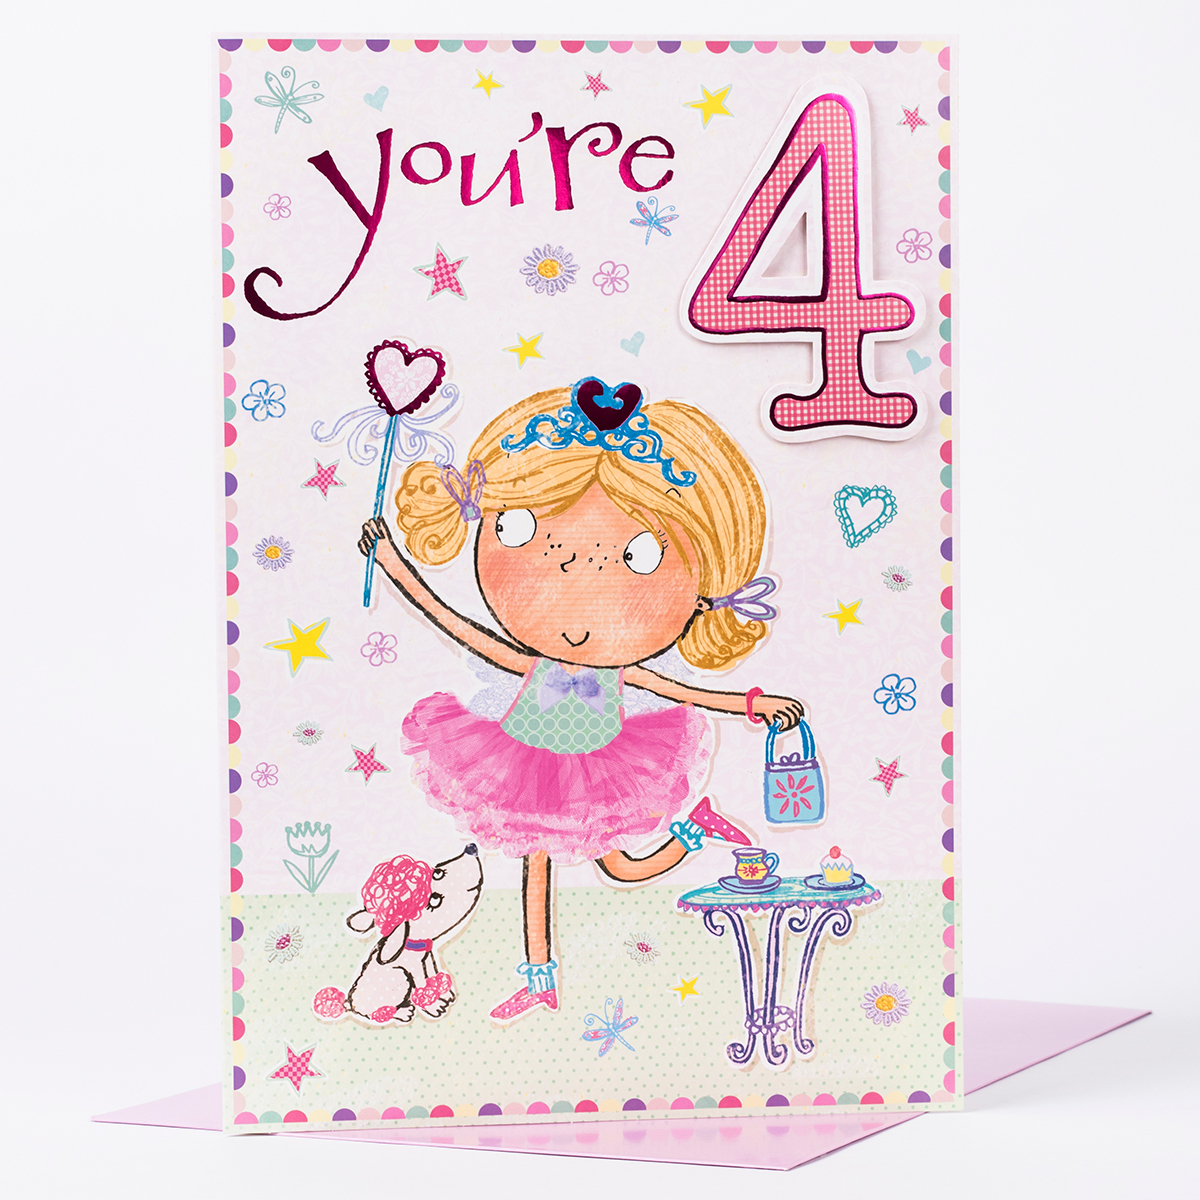 Giant Birthday Card Ideas Giant 4th Birthday Card Little Girl